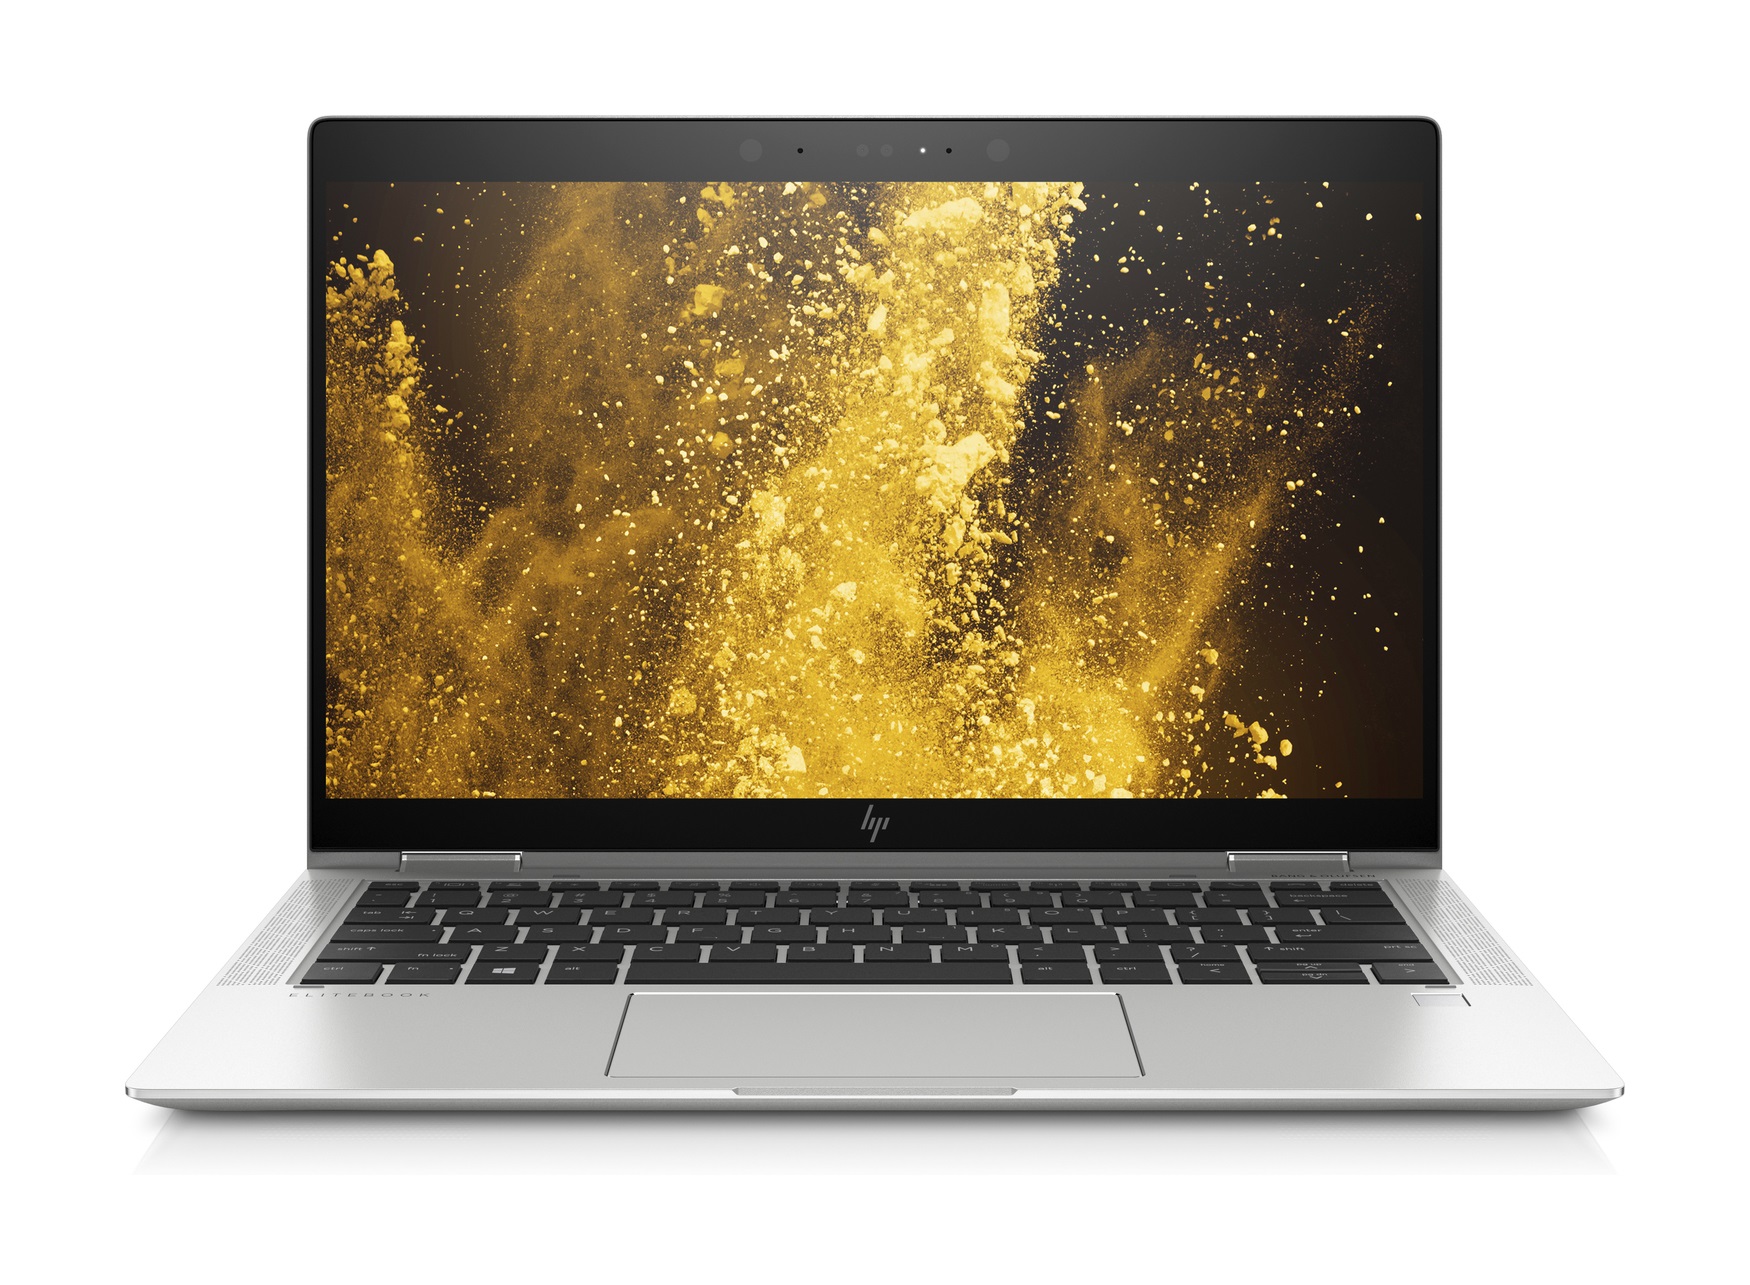 HP EliteBook x360 1030 G3 2-in-1 i7 8650U 8GB 512GB 13.3